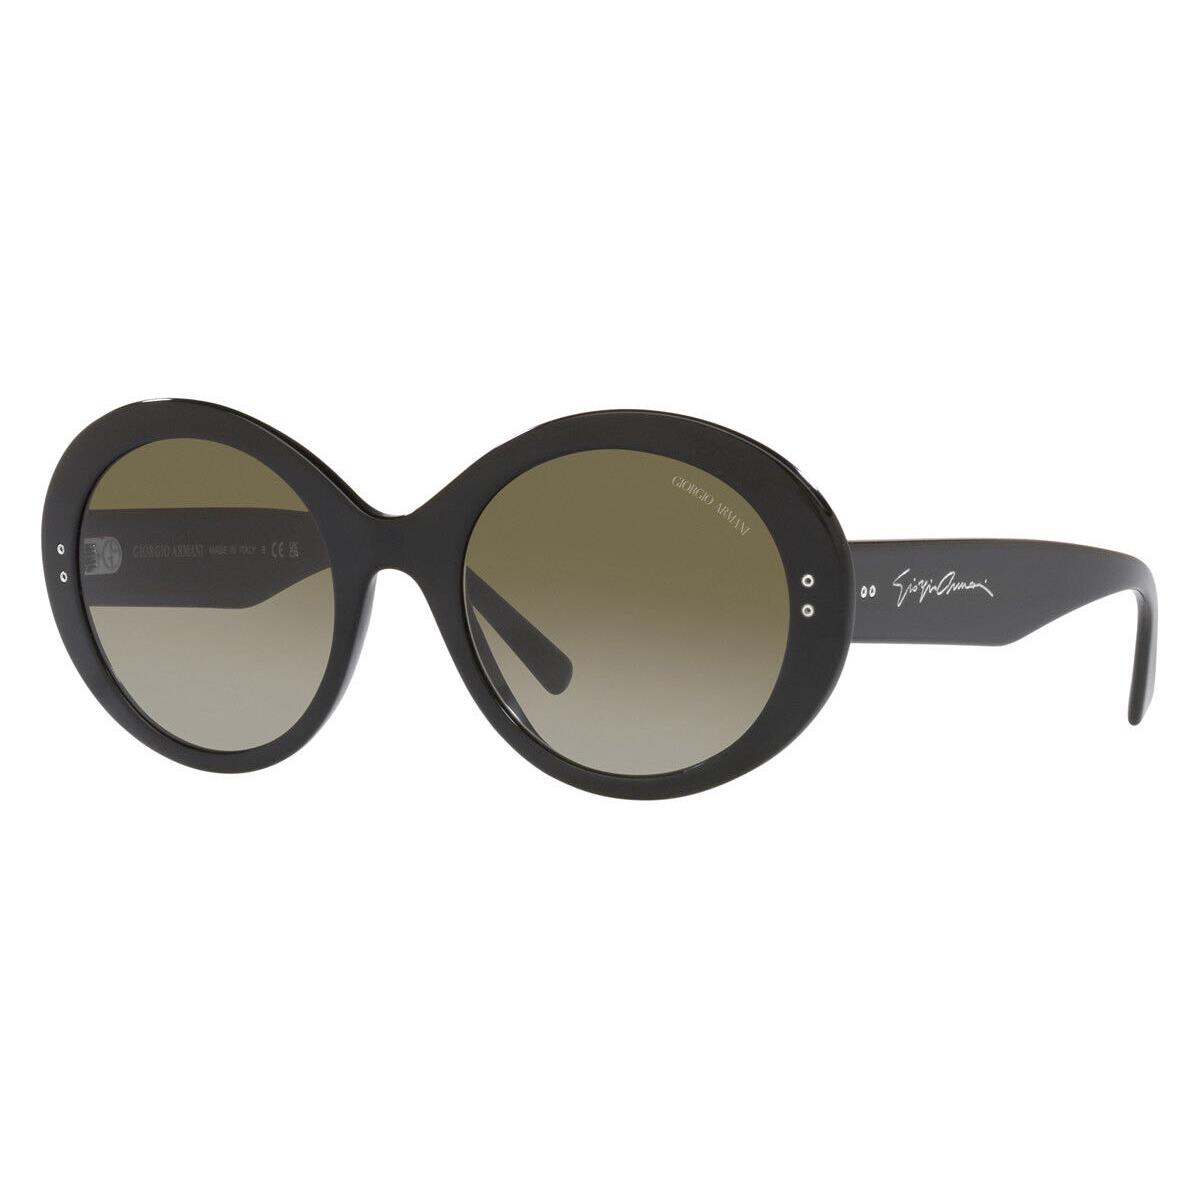 Giorgio Armani AR8174 Sunglasses Black Green Gradient 53mm